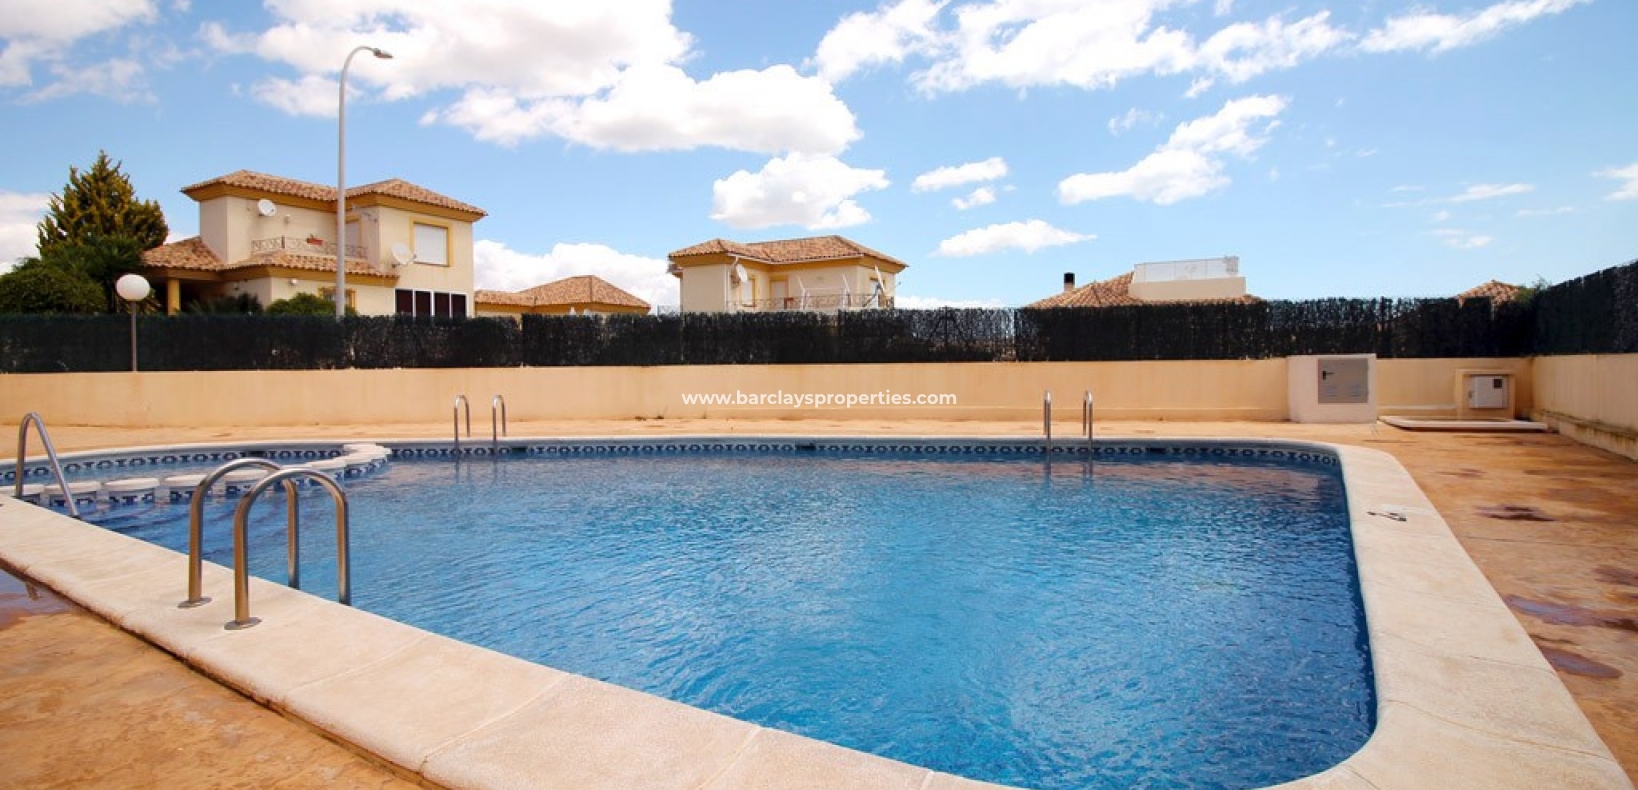 Propriété de style maison de ville à vendre à La Marina, Alicante Espagne. - piscine